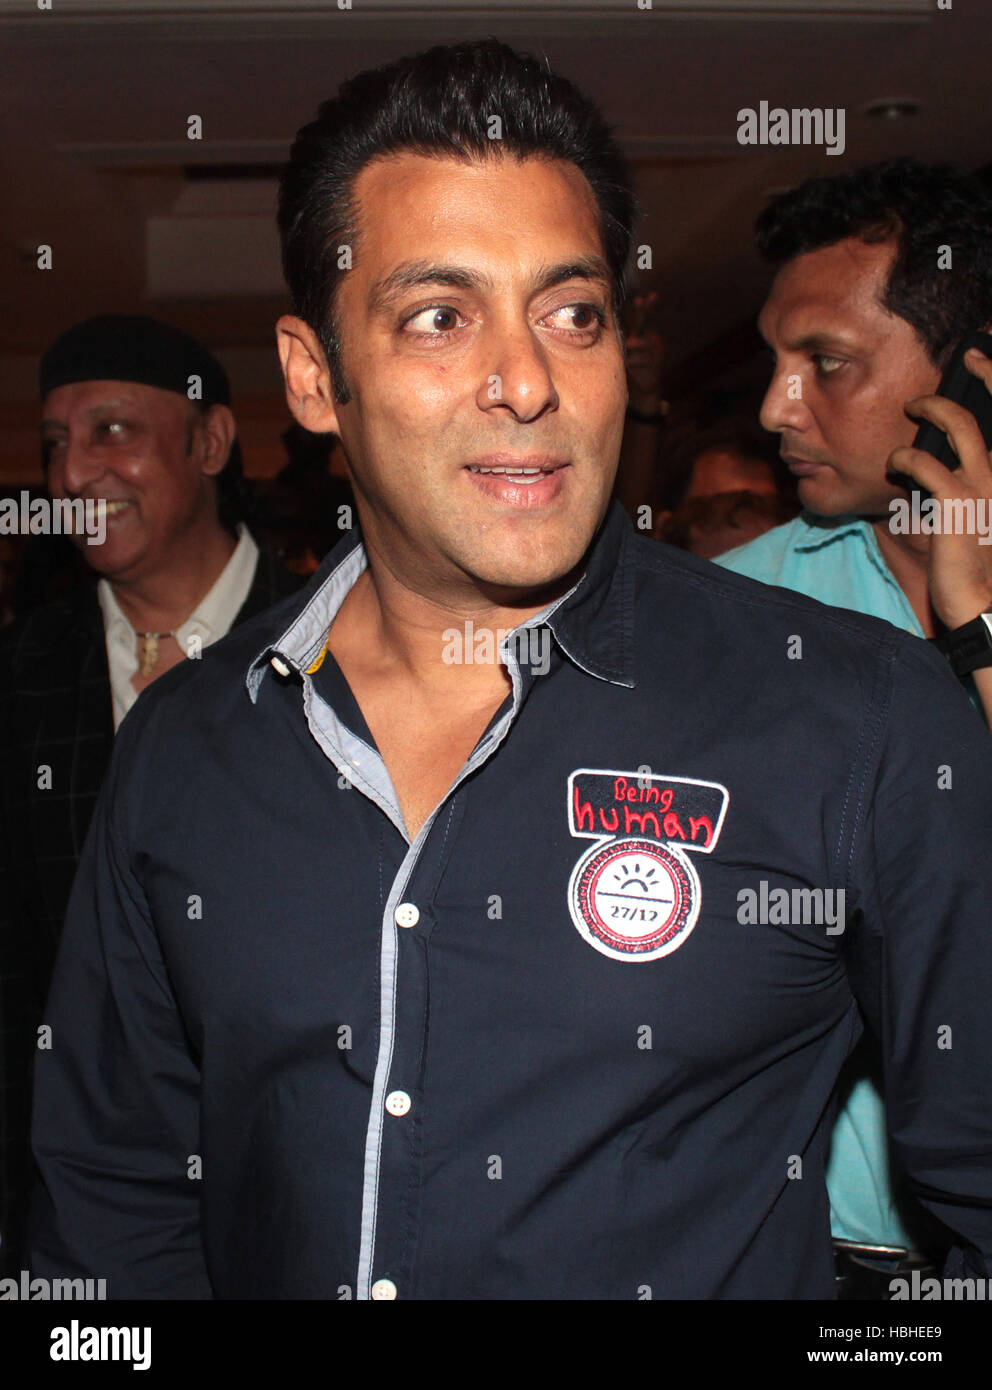 Acteur de Bollywood Salman Khan lors de la troisième édition d'IBN7 Super idoles dans Mumbai, Inde le 20 mars 2012 Banque D'Images